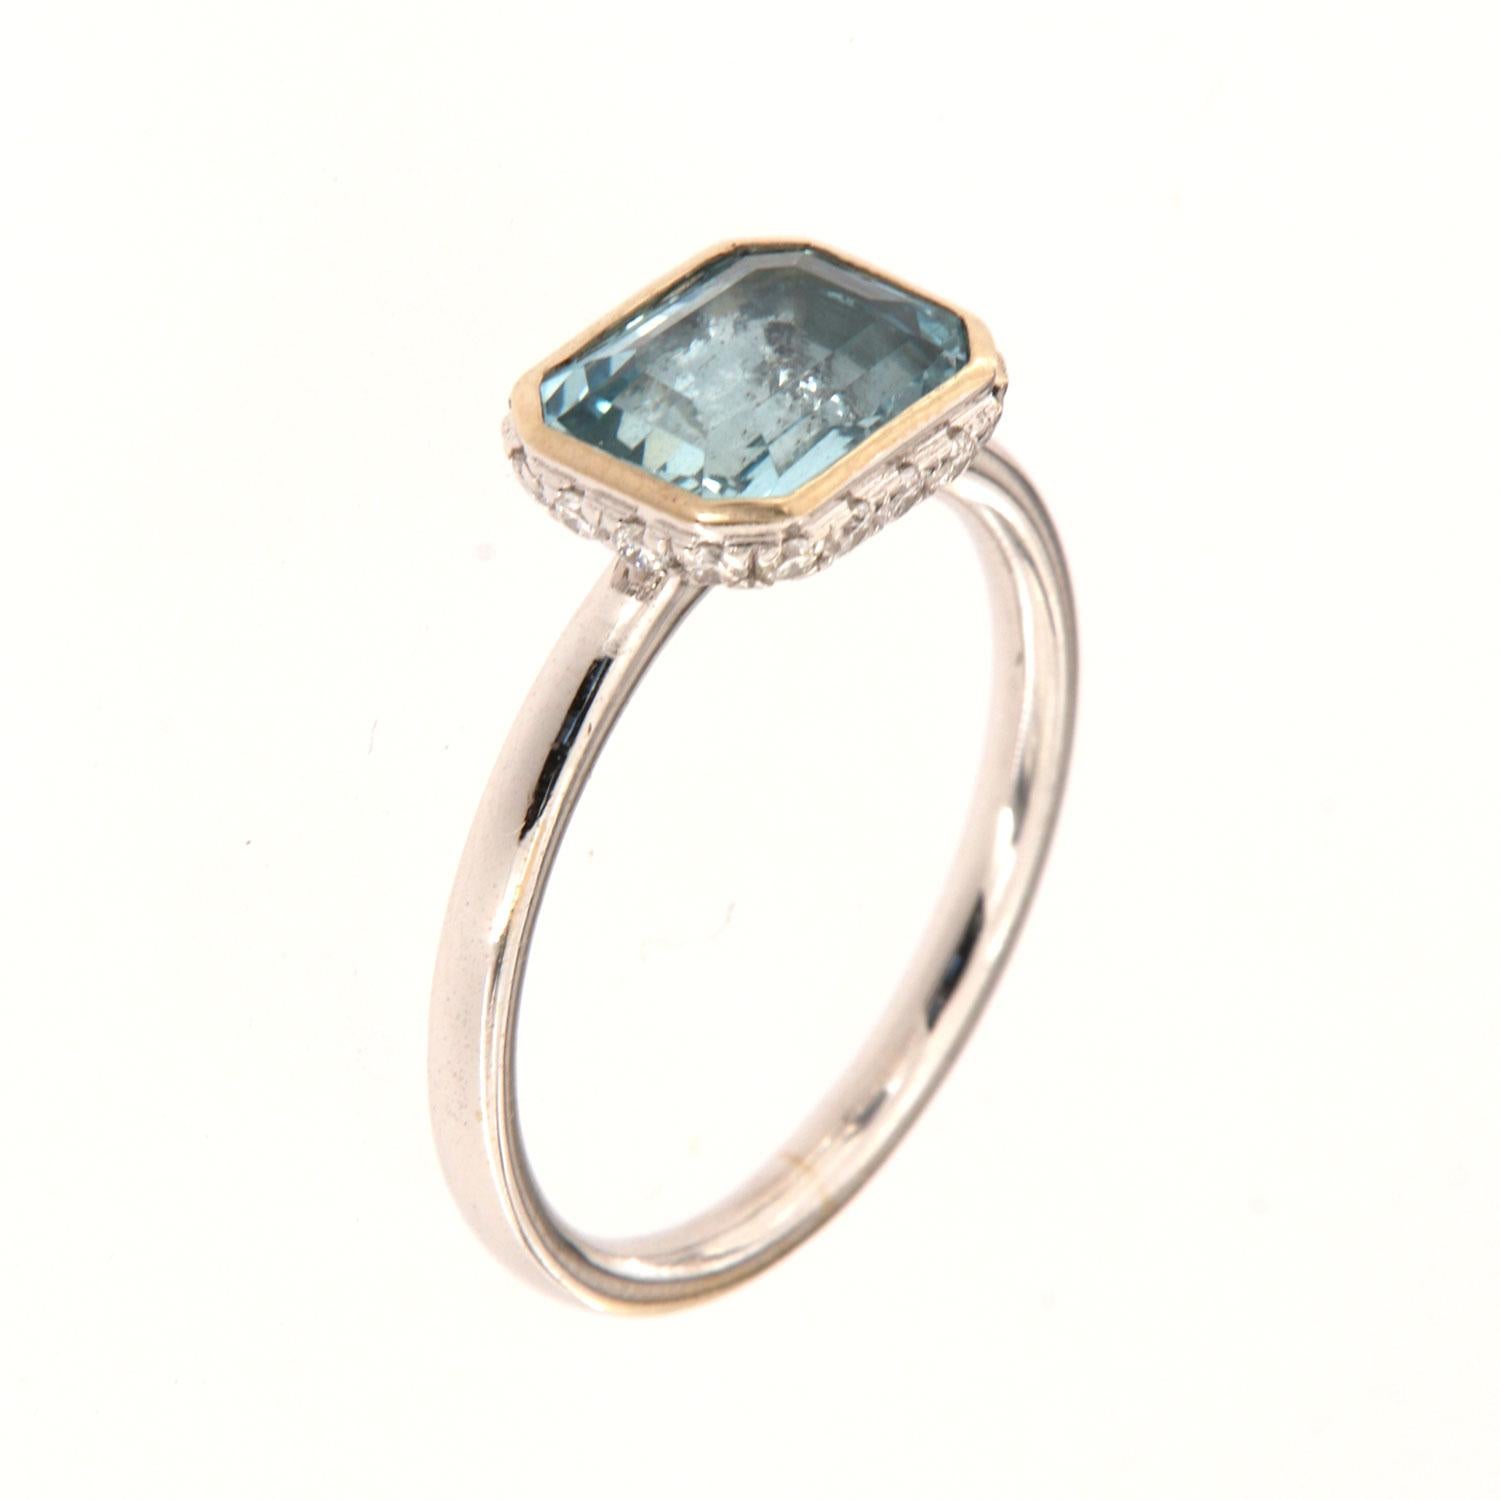 Dieser zarte Ring aus 14 Karat Weißgold besteht aus einer Lünette mit 1,70 Karat blauem Aquamarin im Smaragdschliff im Osten-West-Stil. Die dreizehn (16) glitzernden runden Diamanten sind in einer versteckten Kranze auf der Krone in Mikro-Zacken